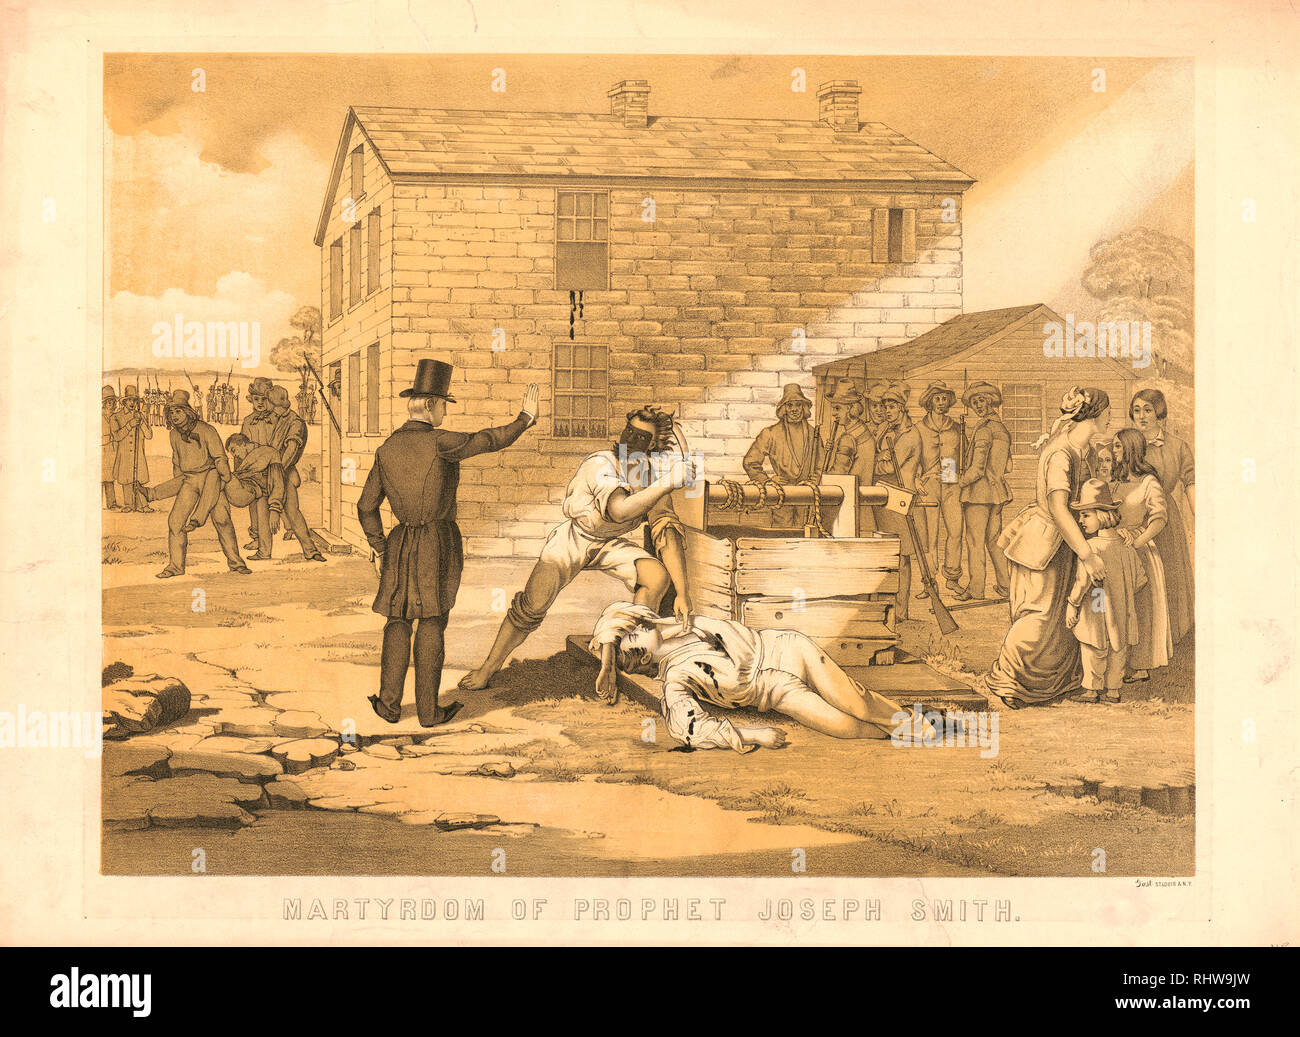 Martyrdom of Prophet Joseph Smith ca. 1891 Stock Photo